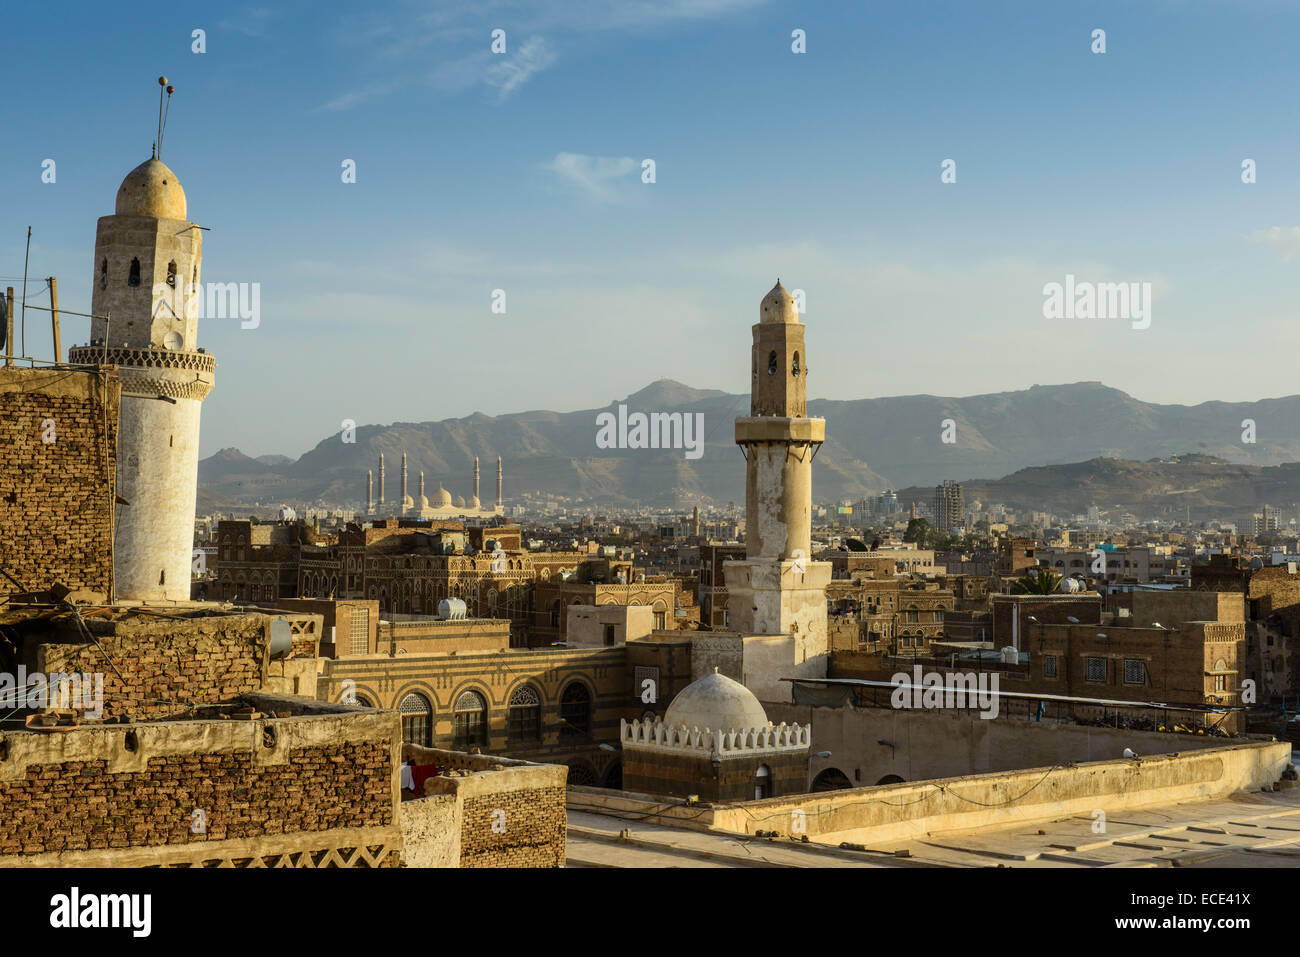 La ciudad vieja de Sana'a, Sitio del Patrimonio Mundial de la UNESCO, Sana'a, Yemen Foto de stock